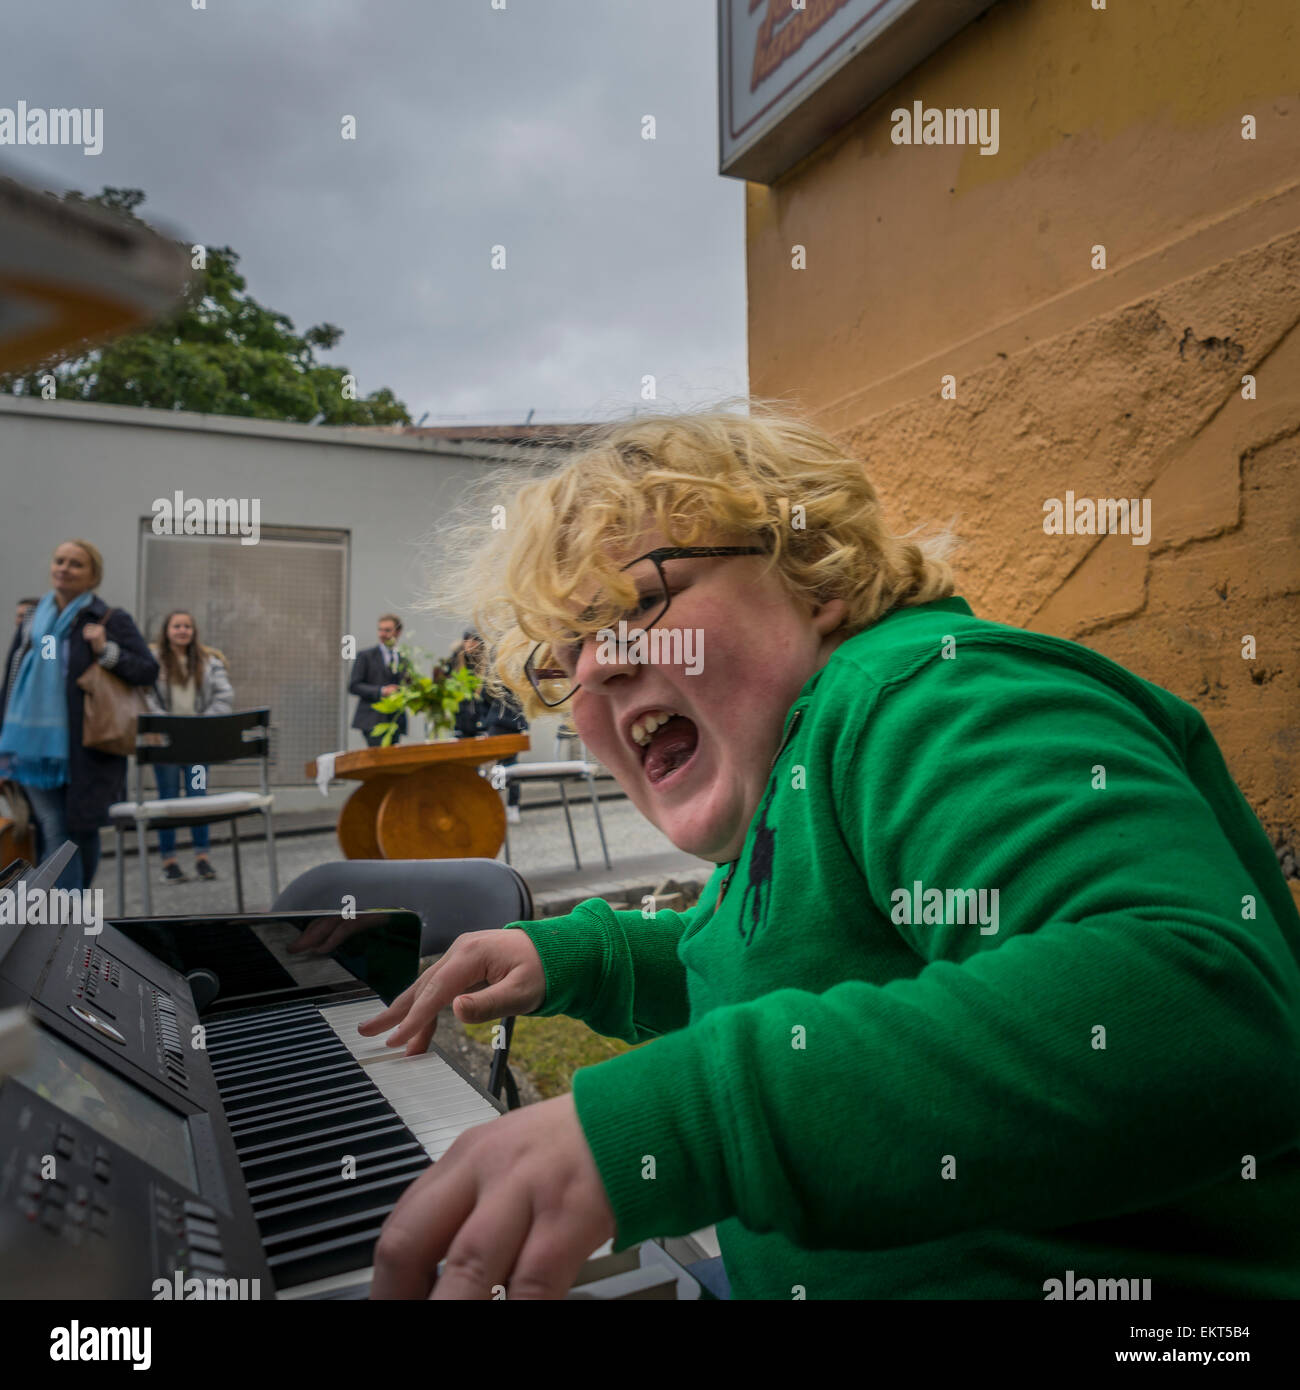 Junge spielt Klavier und Gesang. Die jährliche Ende Sommer Festival - Kulturfestival (menningarnott), Reykjavik, Island Stockfoto